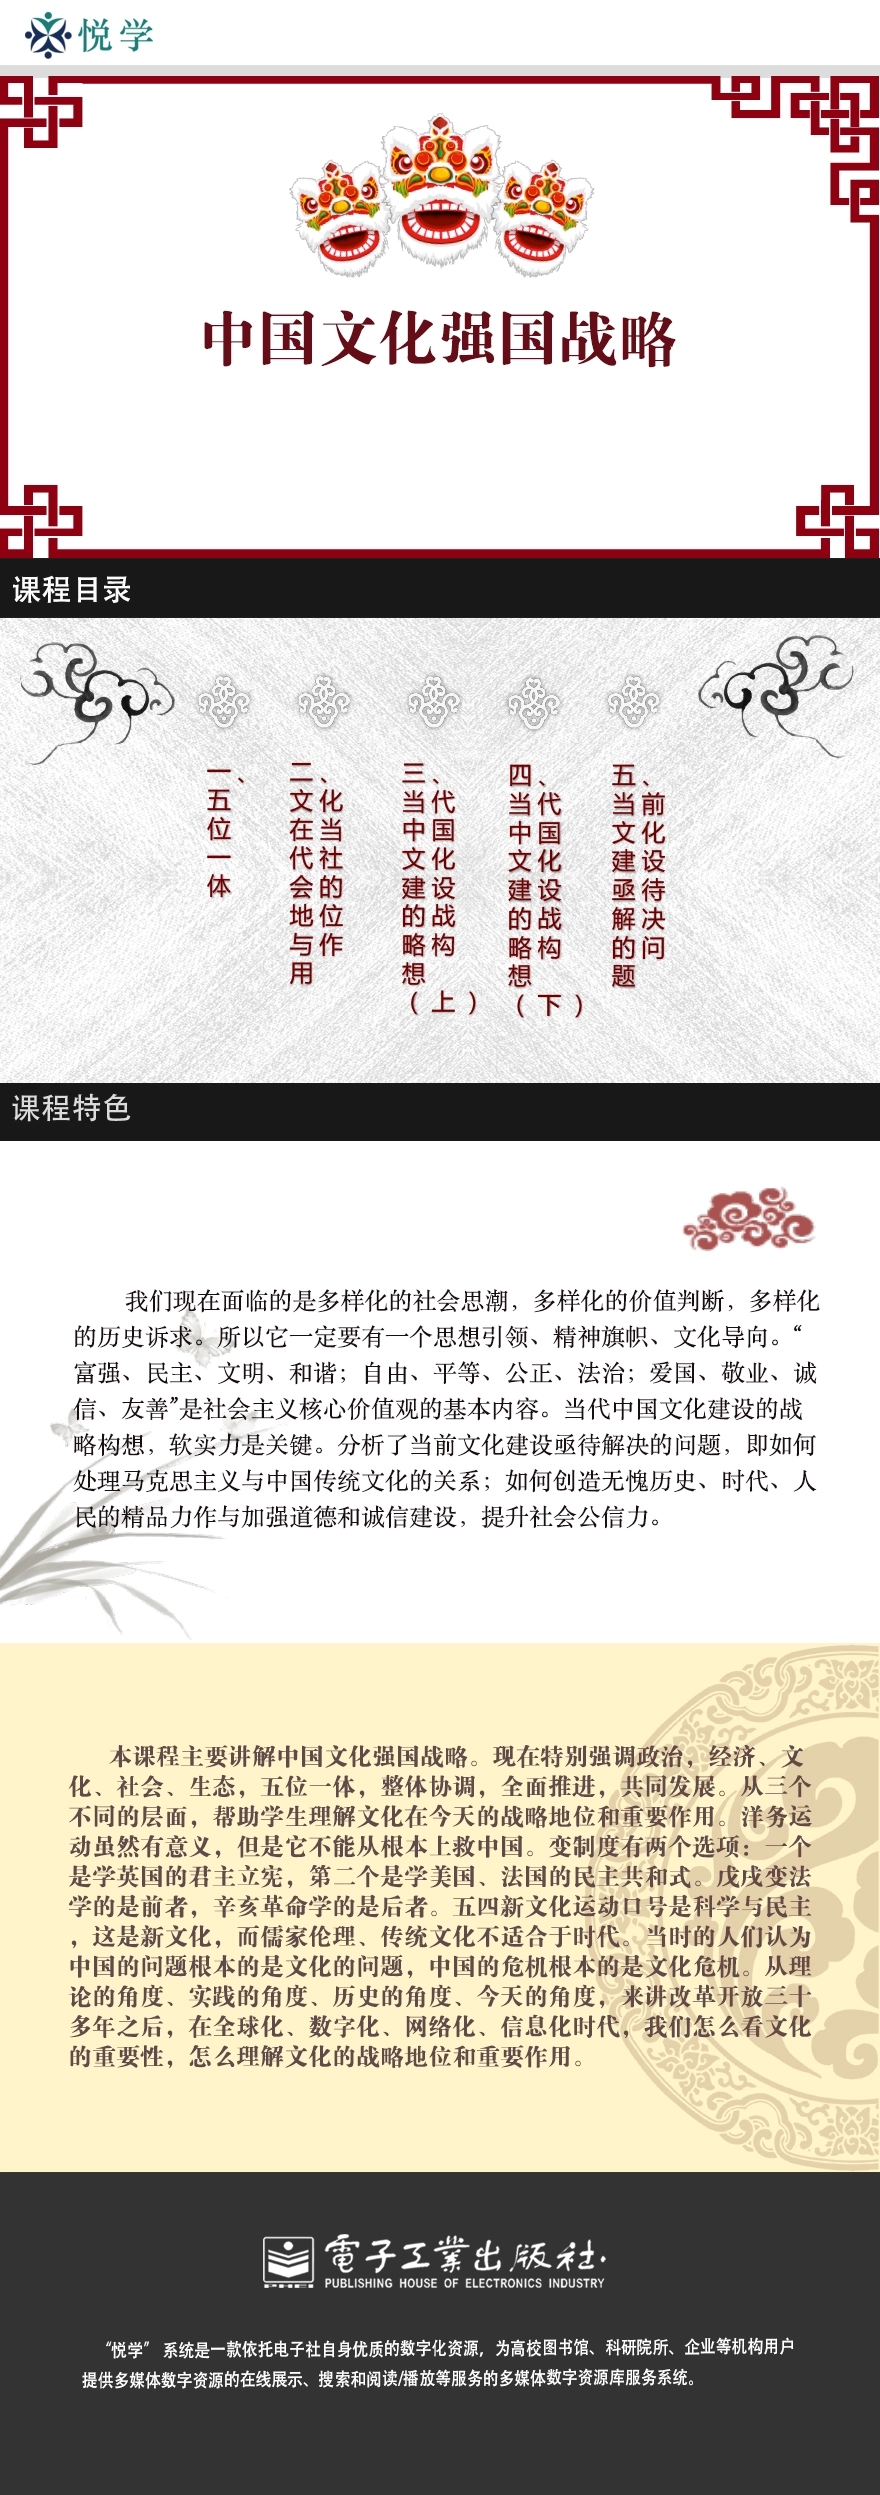 中国文化强国战略 详情页.webp.jpg